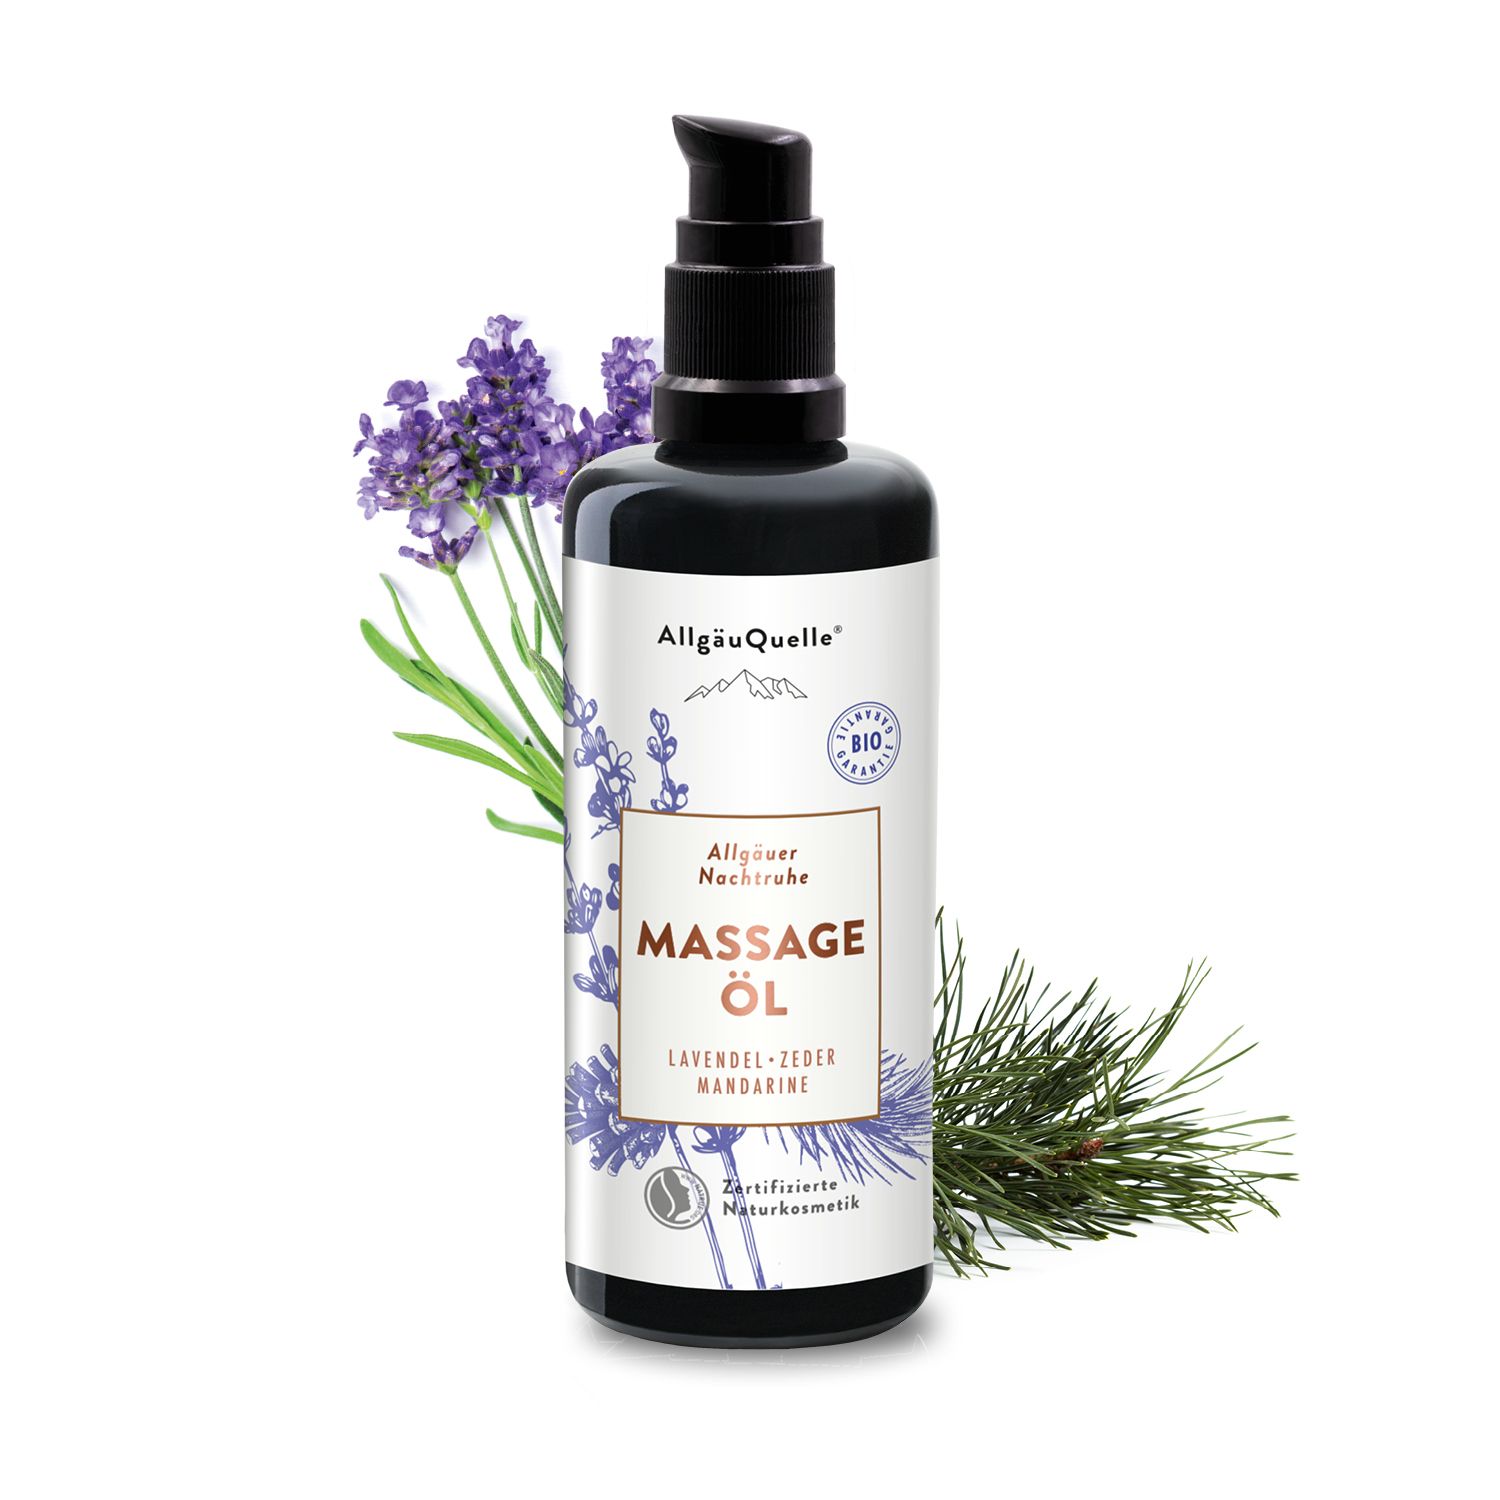 AllgäuQuelle BIO Massageöl 100% naturreine ätherische Öle aus Lavendel, Zeder, Mandarine, vegan